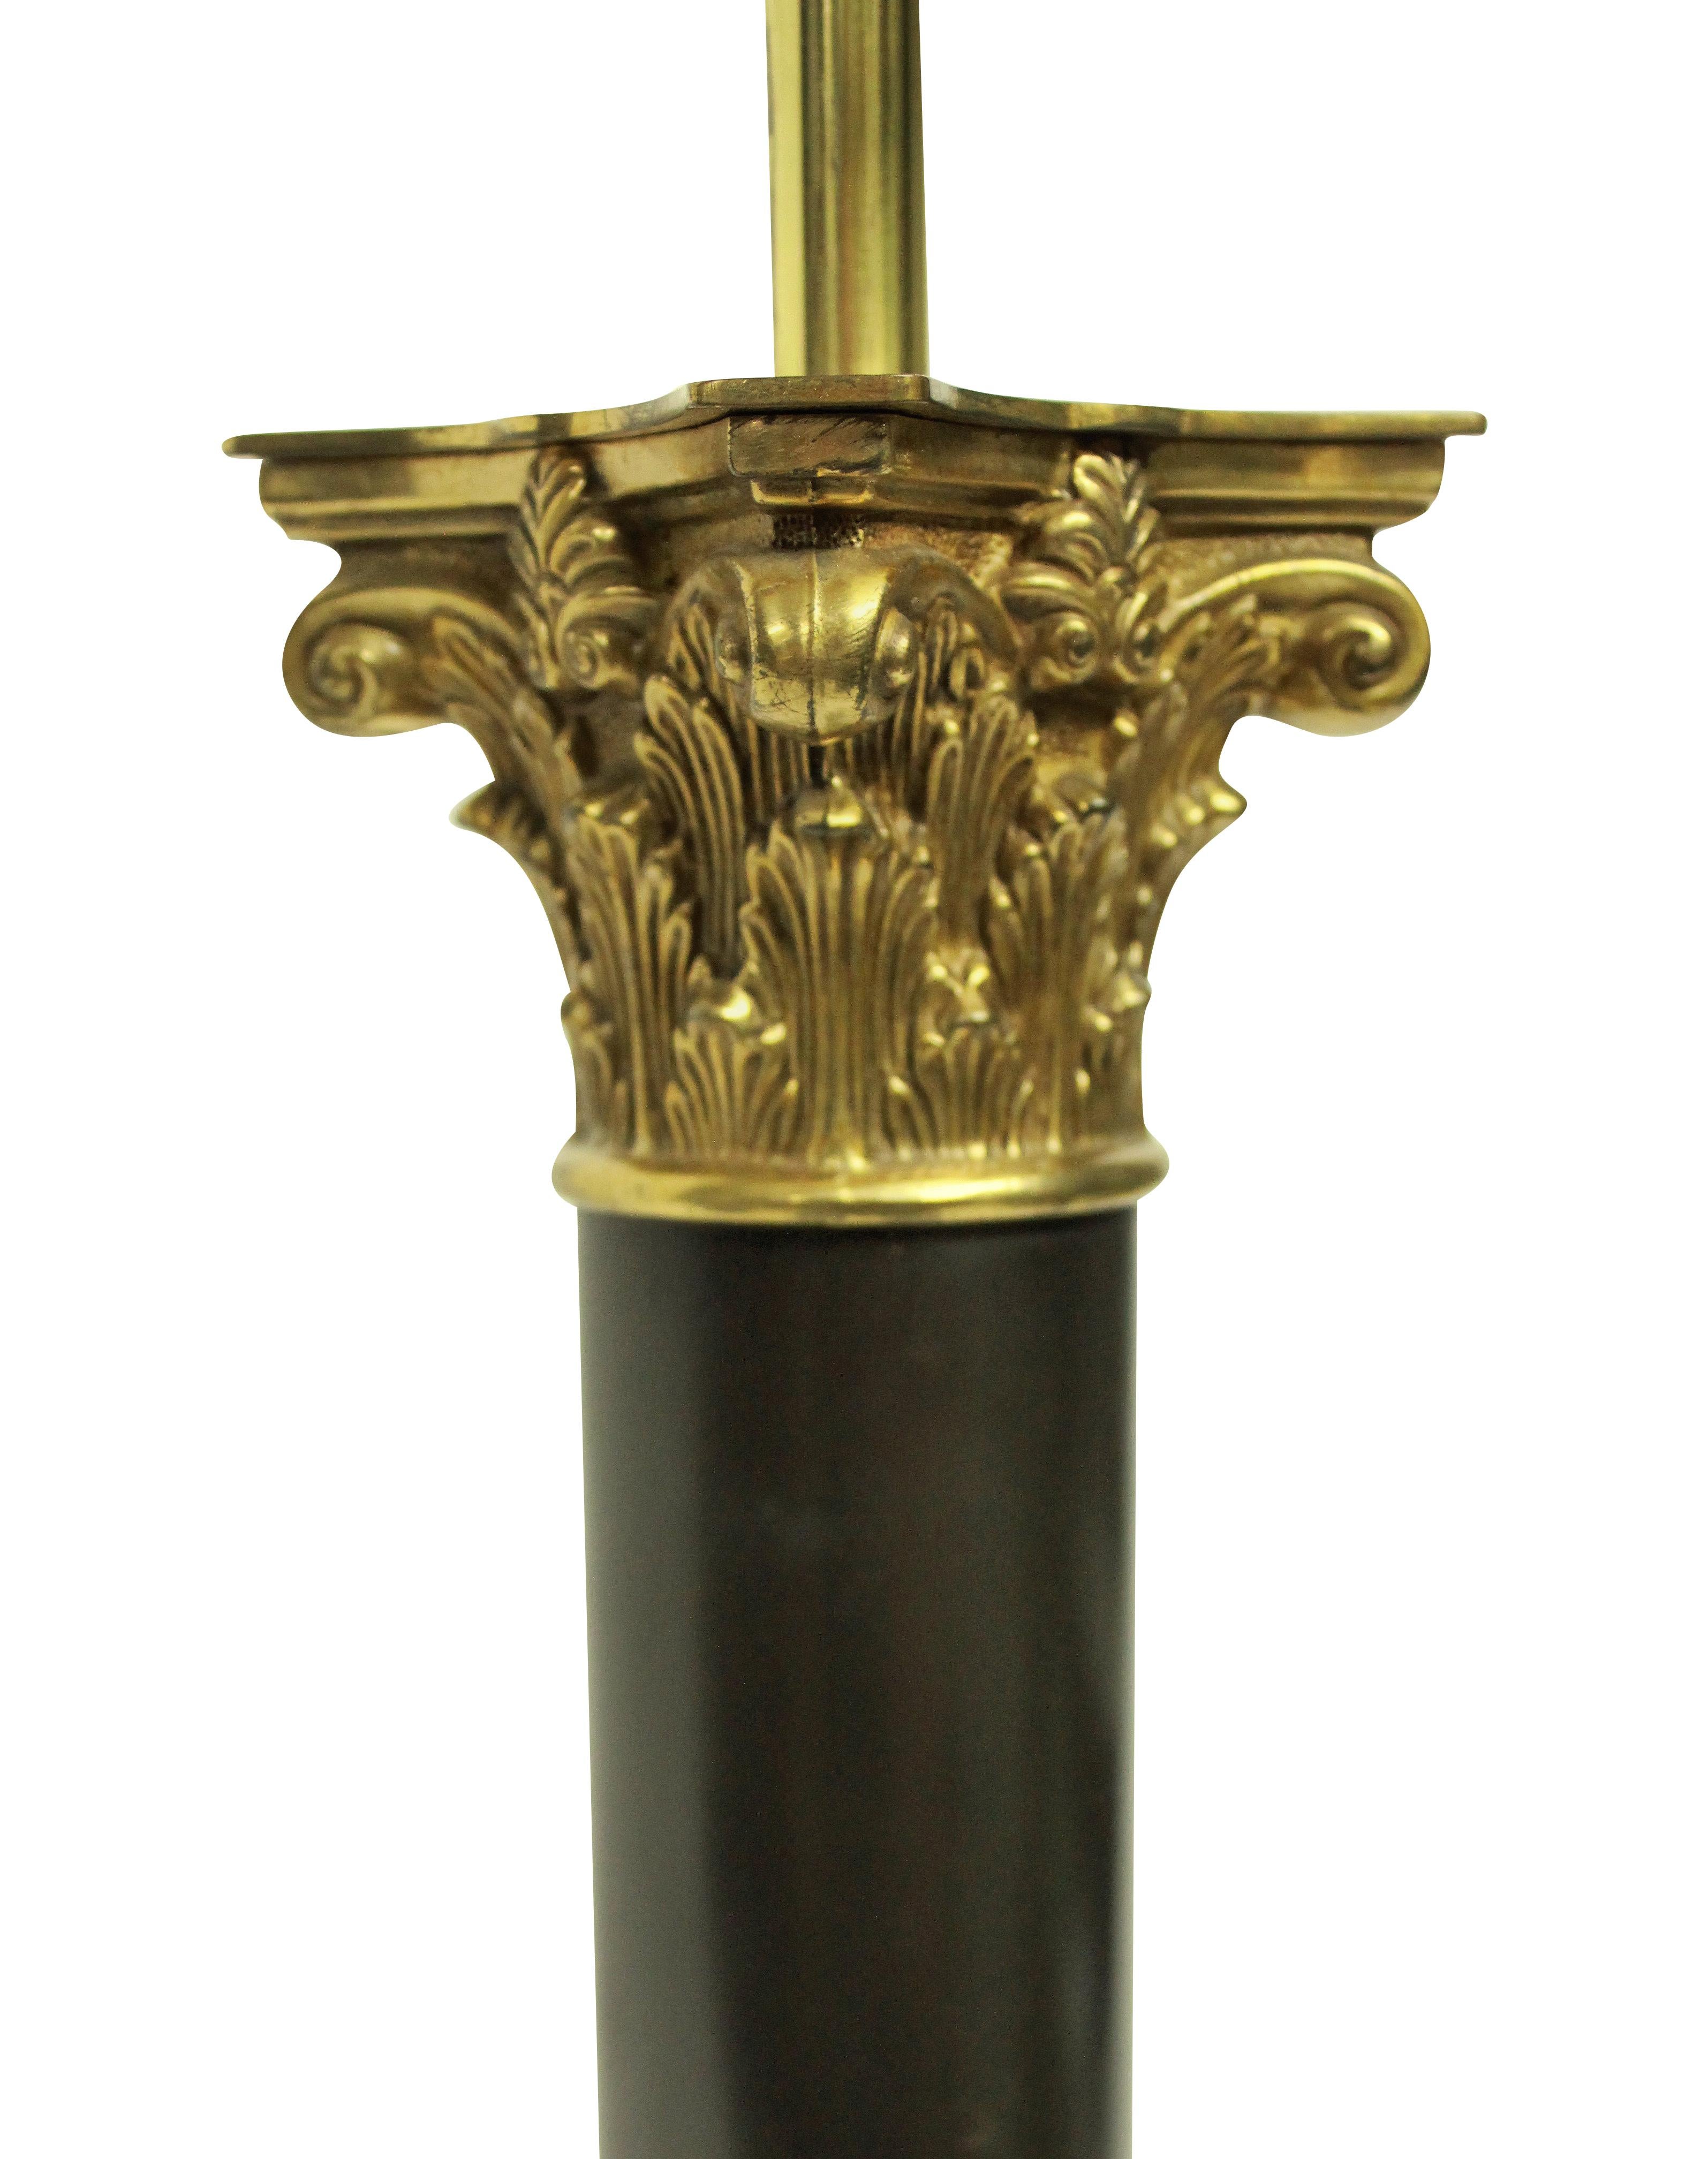 Une grande lampe à colonne anglaise en bronze et bronze doré de style Régence, fabriquée pour le 10 downing street, où l'on trouve plusieurs de ces lampes.